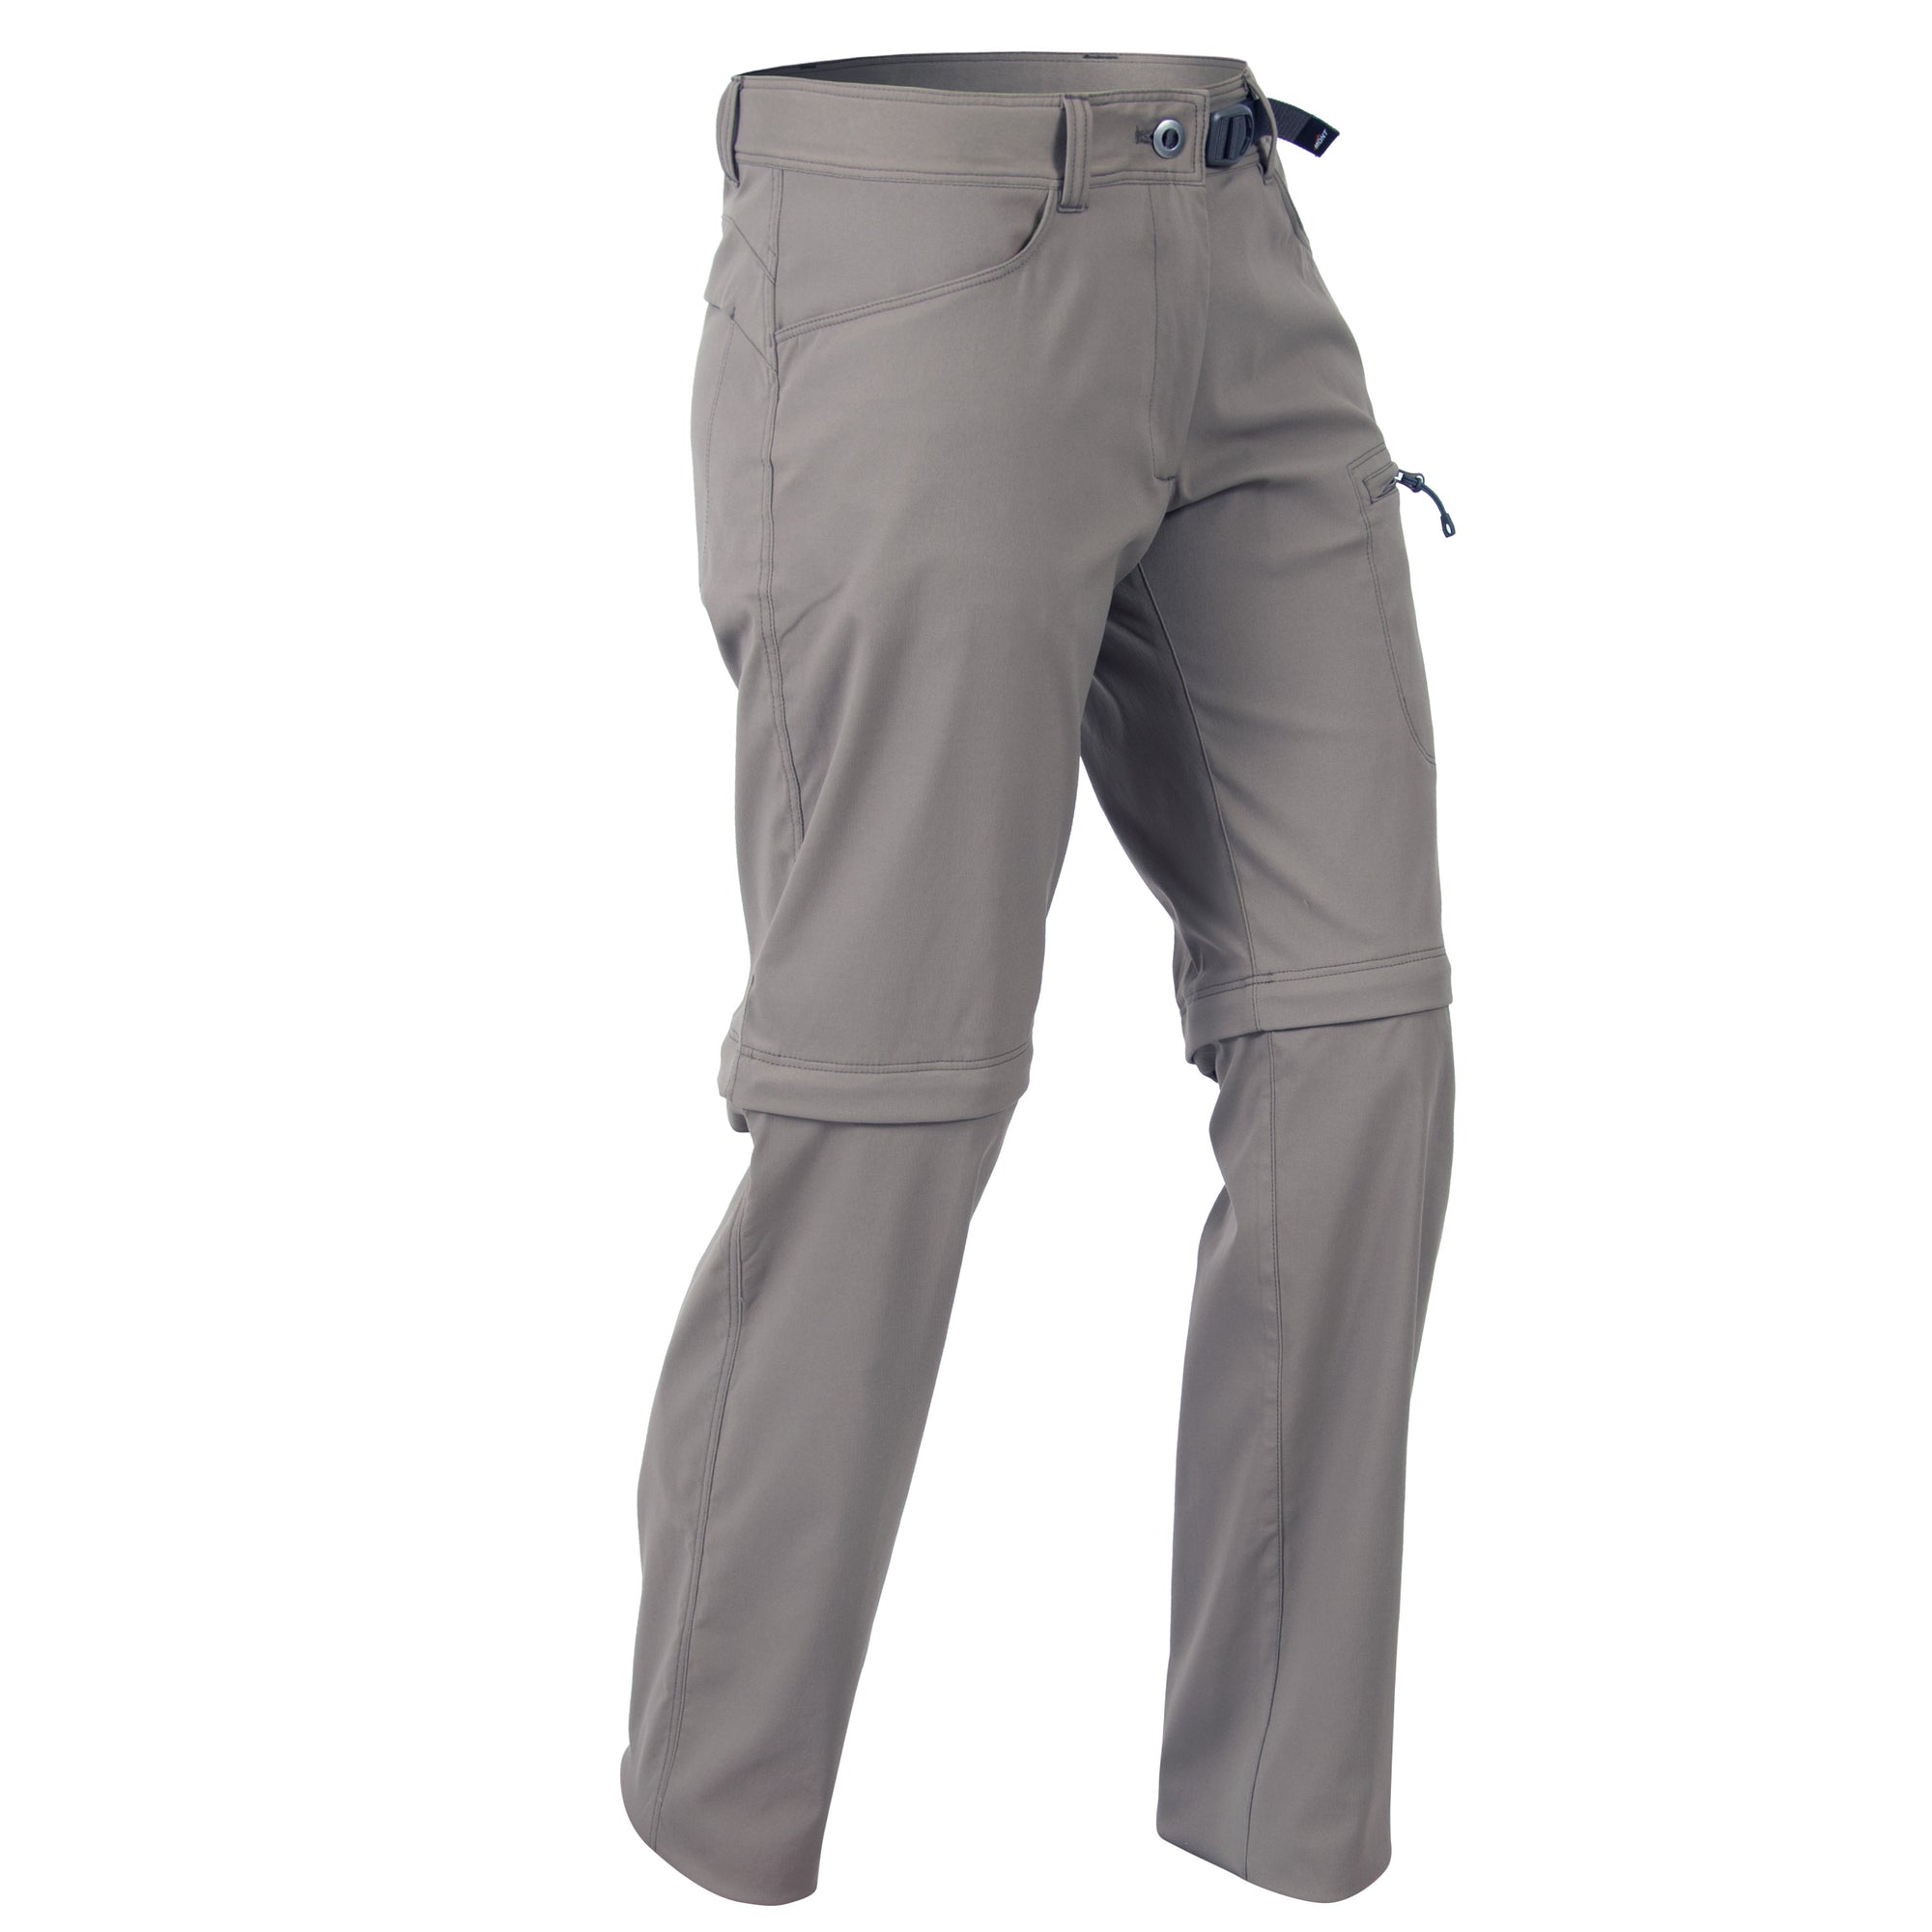  Hiking Pants for Men Convertible Zip Off Outdoor